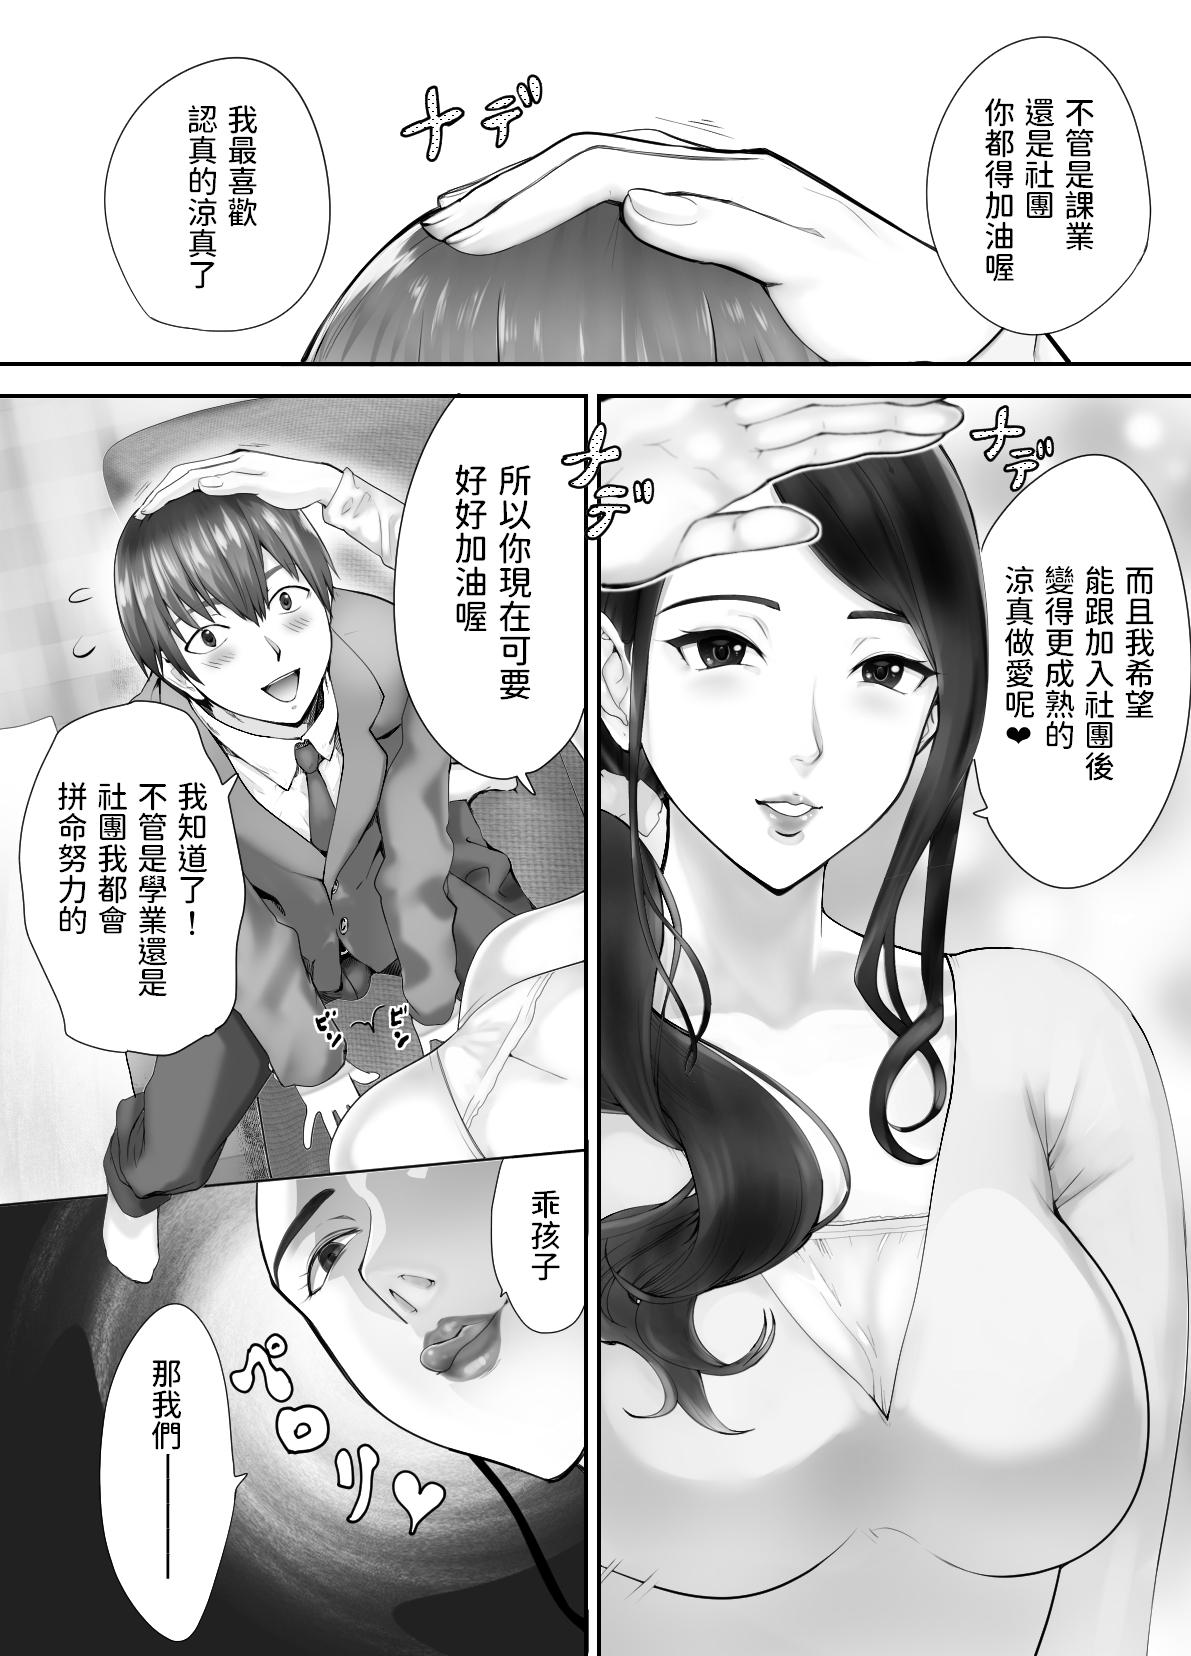 Spa Osananajimi ga Mama to Yatte Imasu. 3 - Original Teenage - Page 10